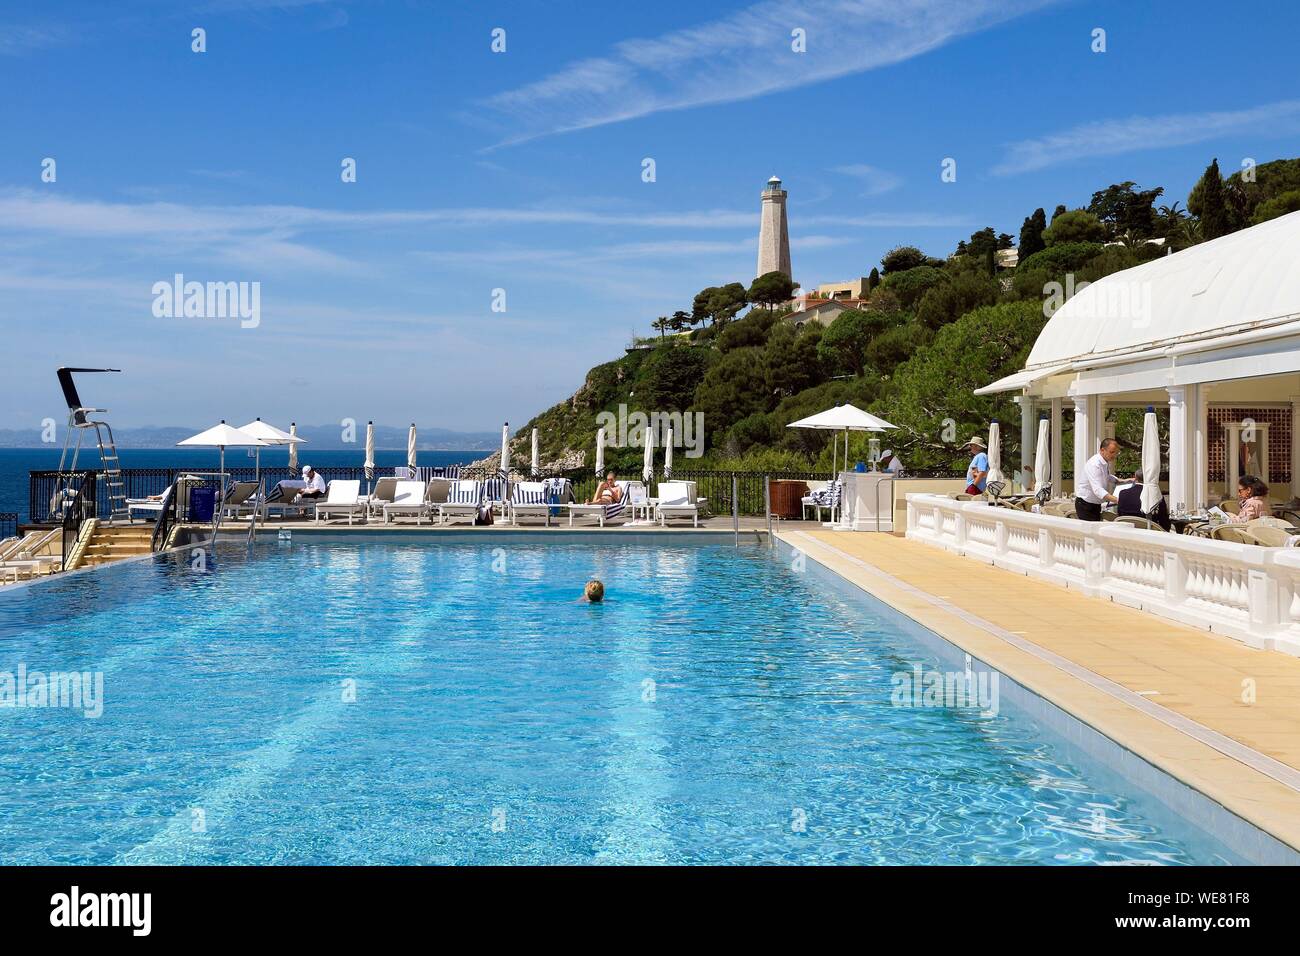 Frankreich, Alpes Maritimes, Saint Jean Cap Ferrat, Grand-Hotel du Cap Ferrat, ein 5-Sterne-Hotel Palace vom Four Seasons Hotel, der schicke Pool Club Dauphin am Pool und mit Blick auf das Meer Stockfoto